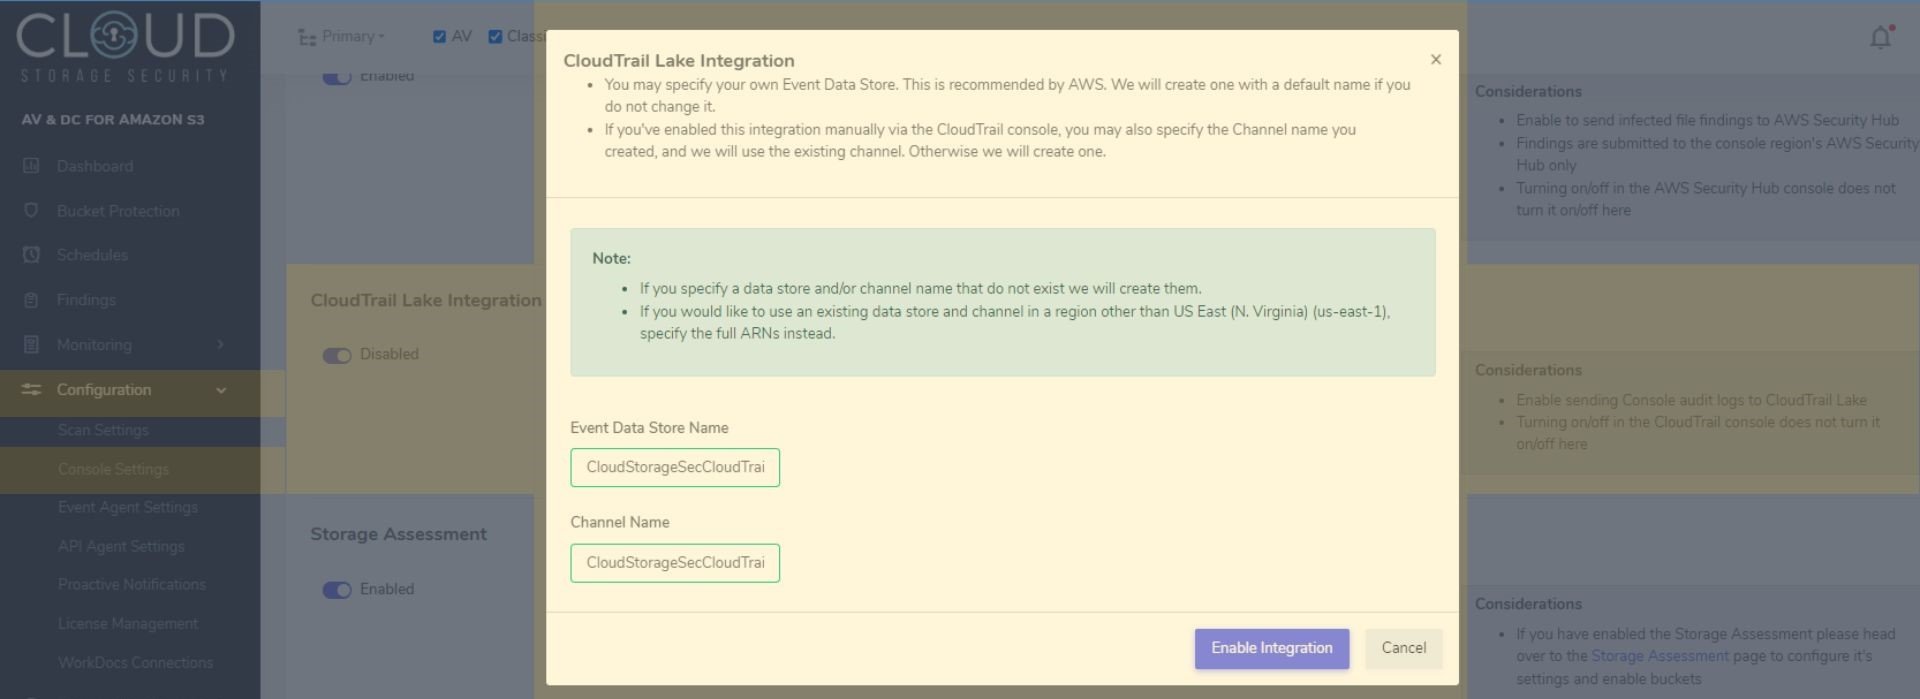 CSS Console - CloudTrail Lake Integration